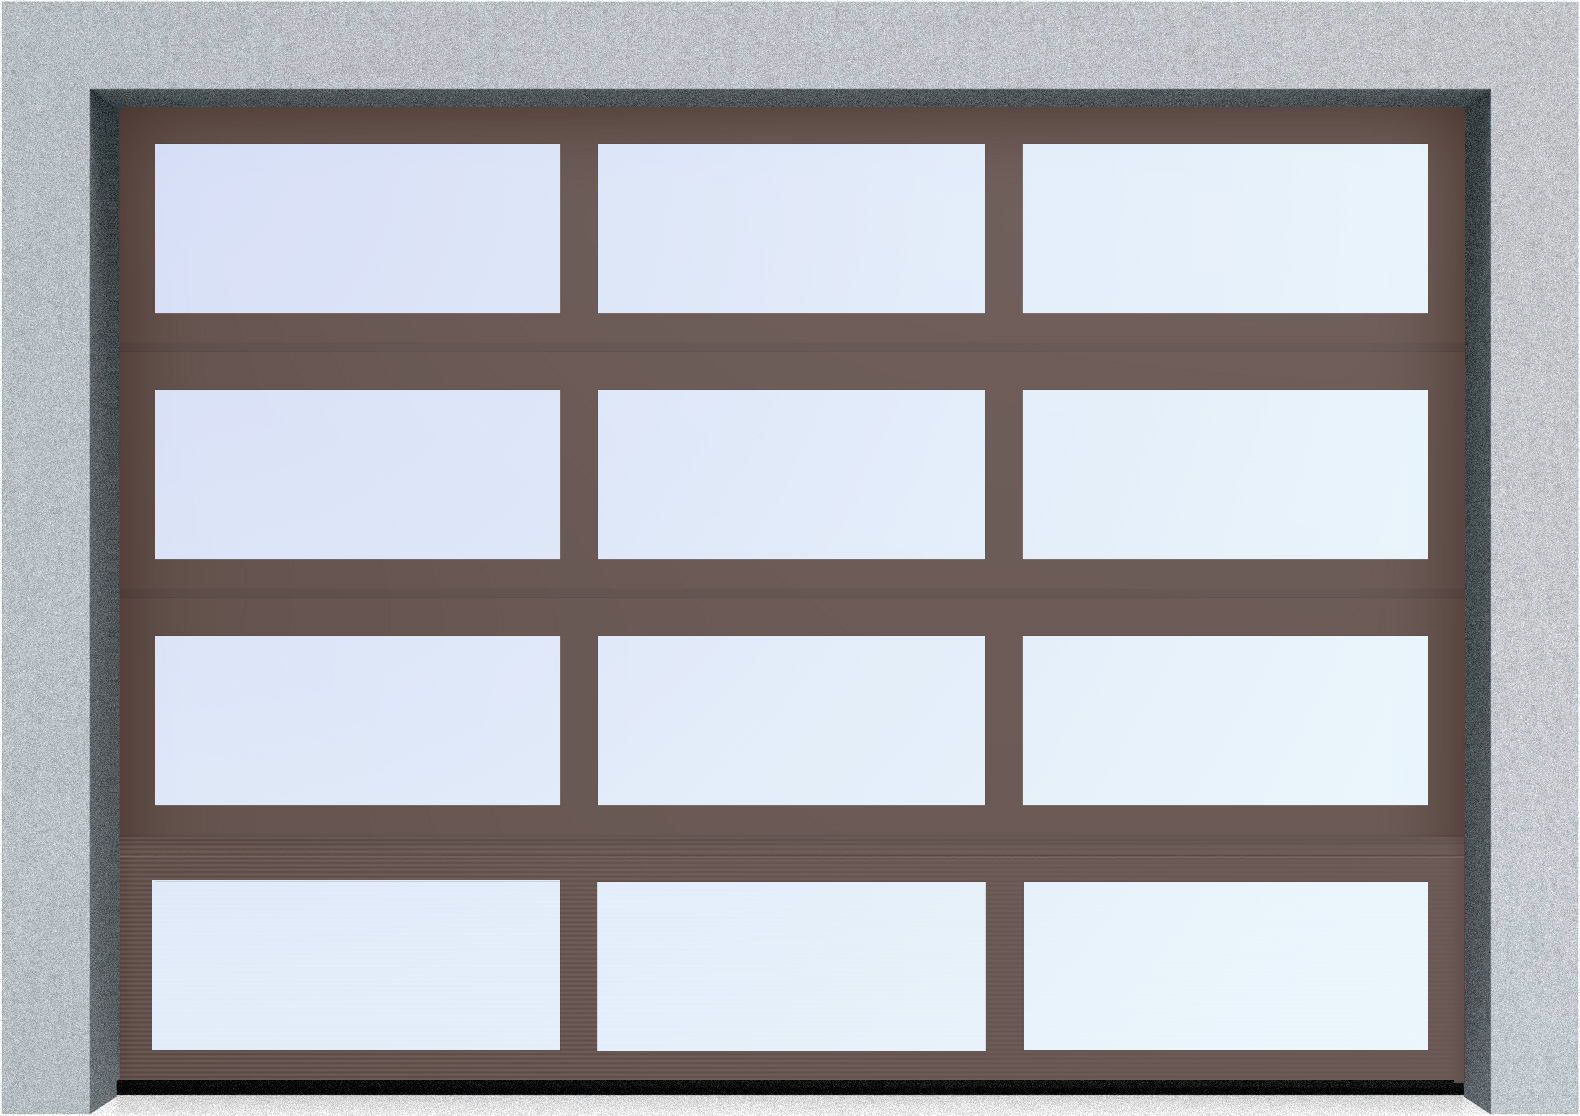  Секционные панорамные ворота серии AluTrend (АЛП) 2875х2125 нижняя панель стандартные цвета, фото 7 